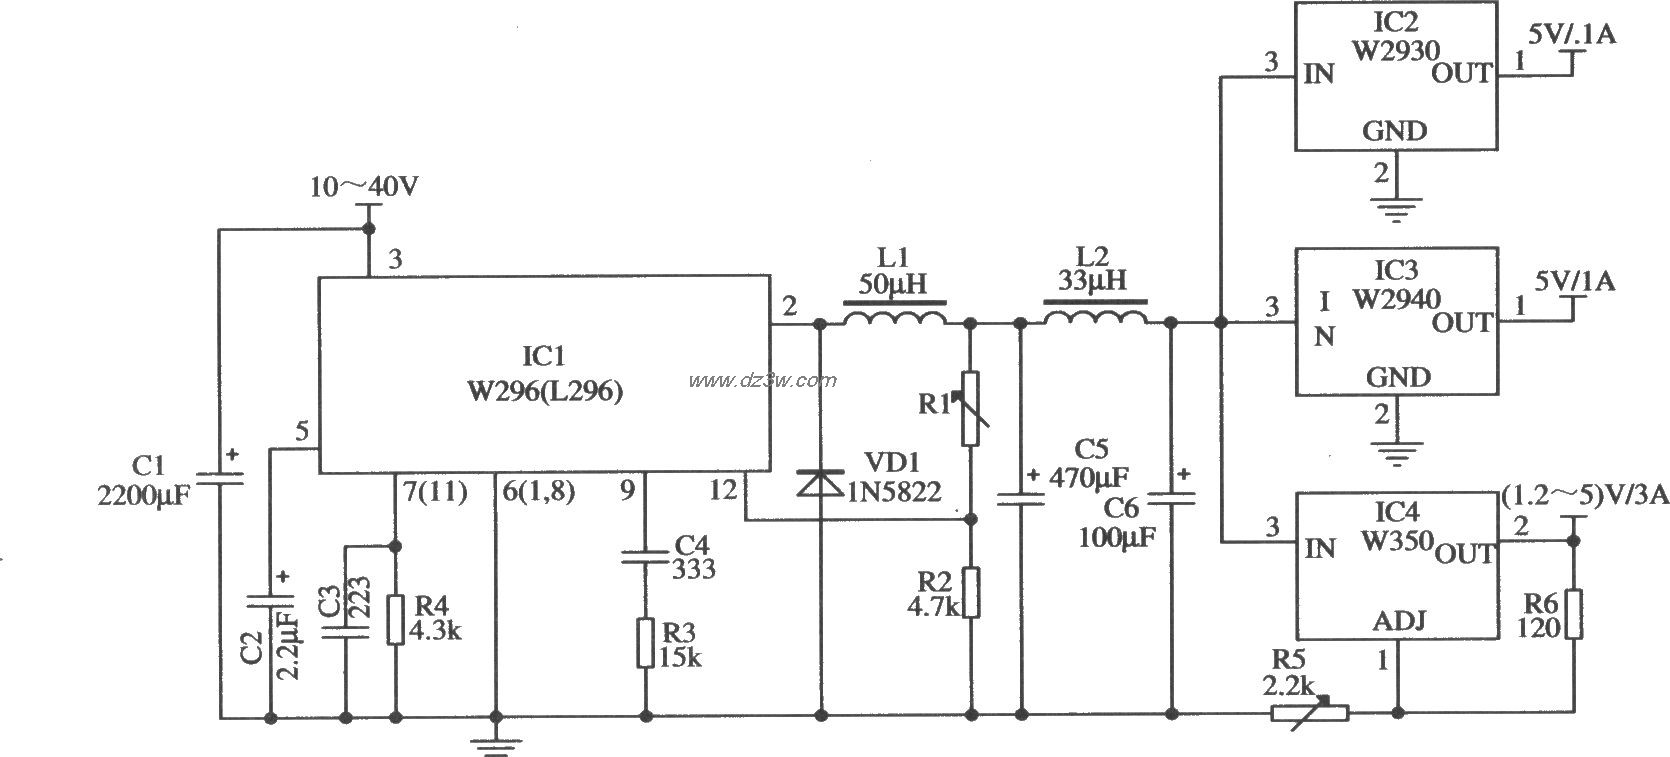 採用W296作預穩壓電源的應用電路